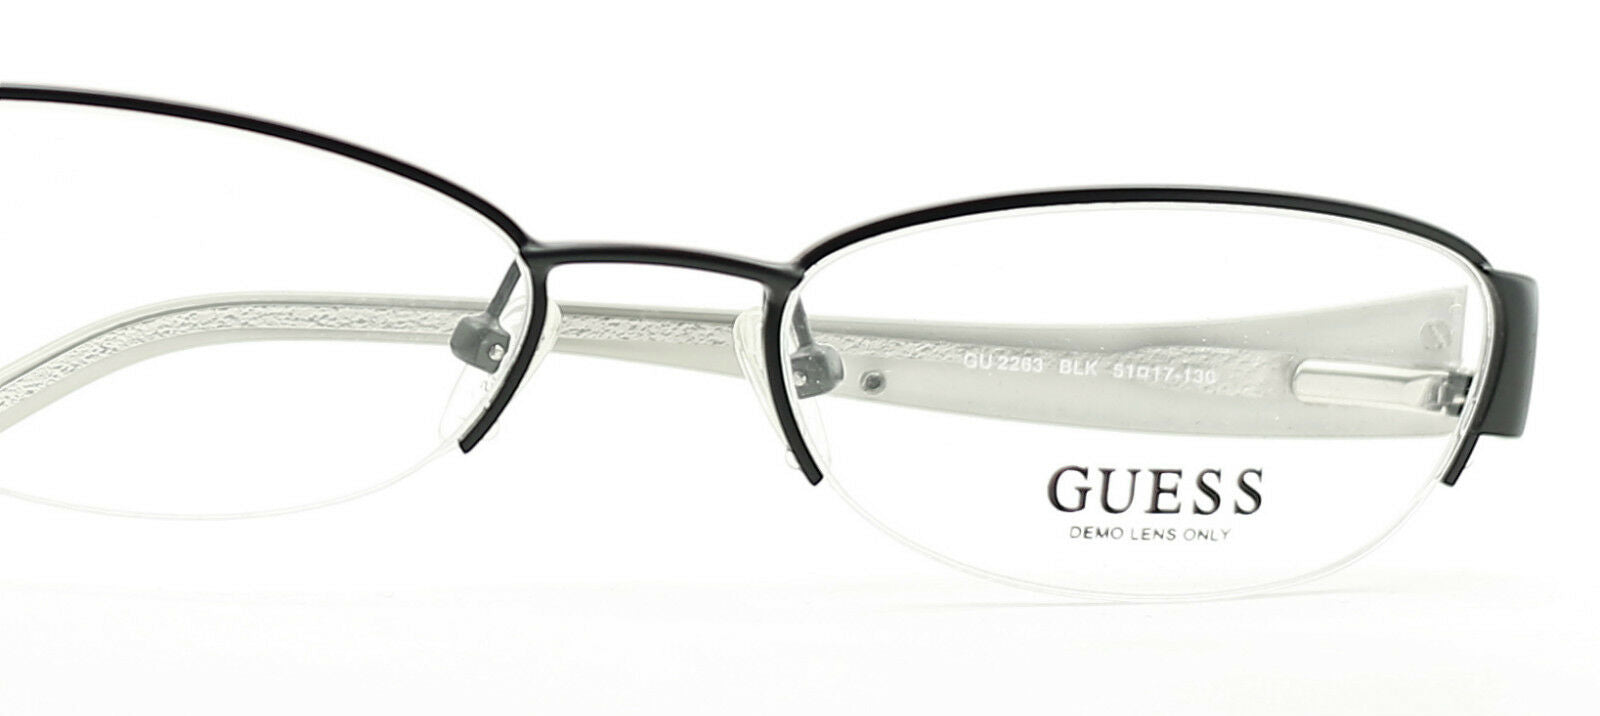 GUESS GU2263 BLK Eyewear FRAMES Glasses Eyeglasses RX Optical BNIB New - TRUSTED